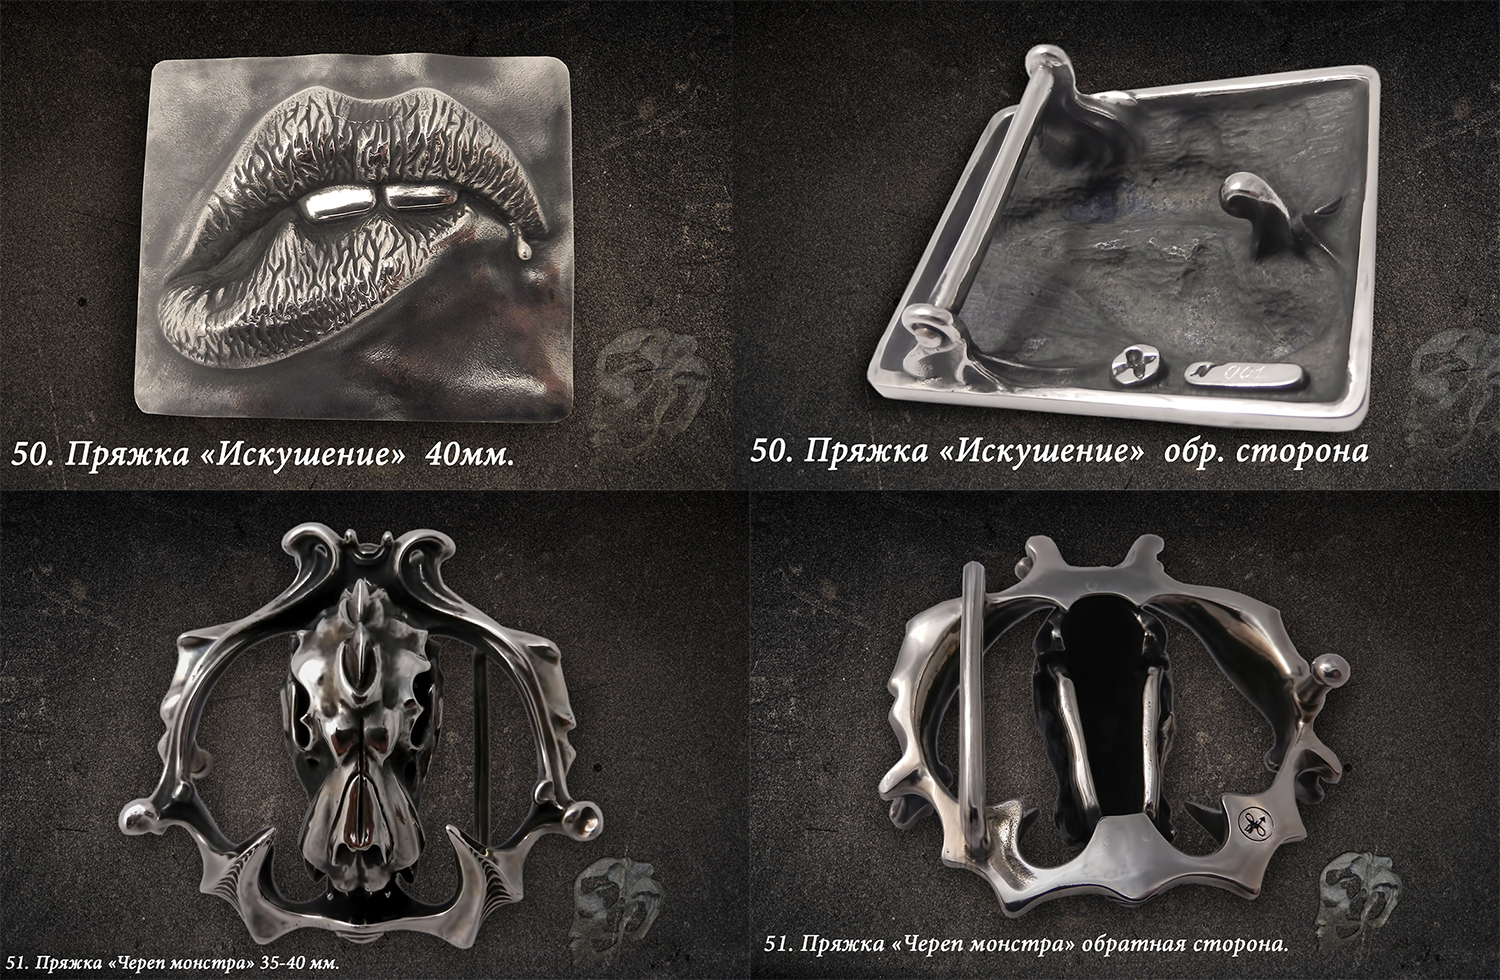 пряжки ручной работы для ремня искушение и череп монстра в Москве от Евгений Голосов Dreamy